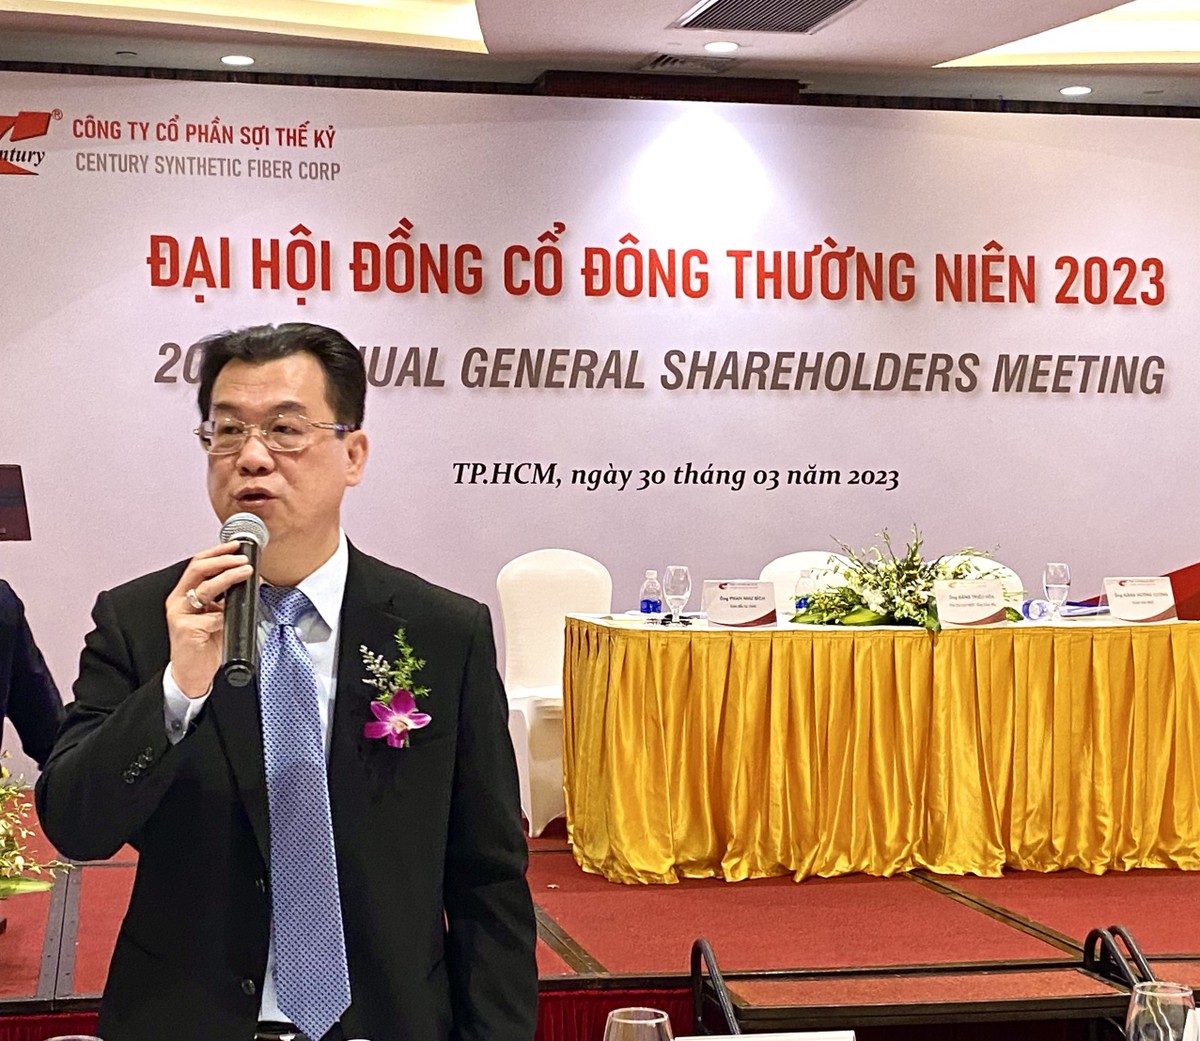 Ông Đặng Triệu Hòa, CEO STK chia sẻ với cổ đông tại ĐHĐCĐ thường niên 2023